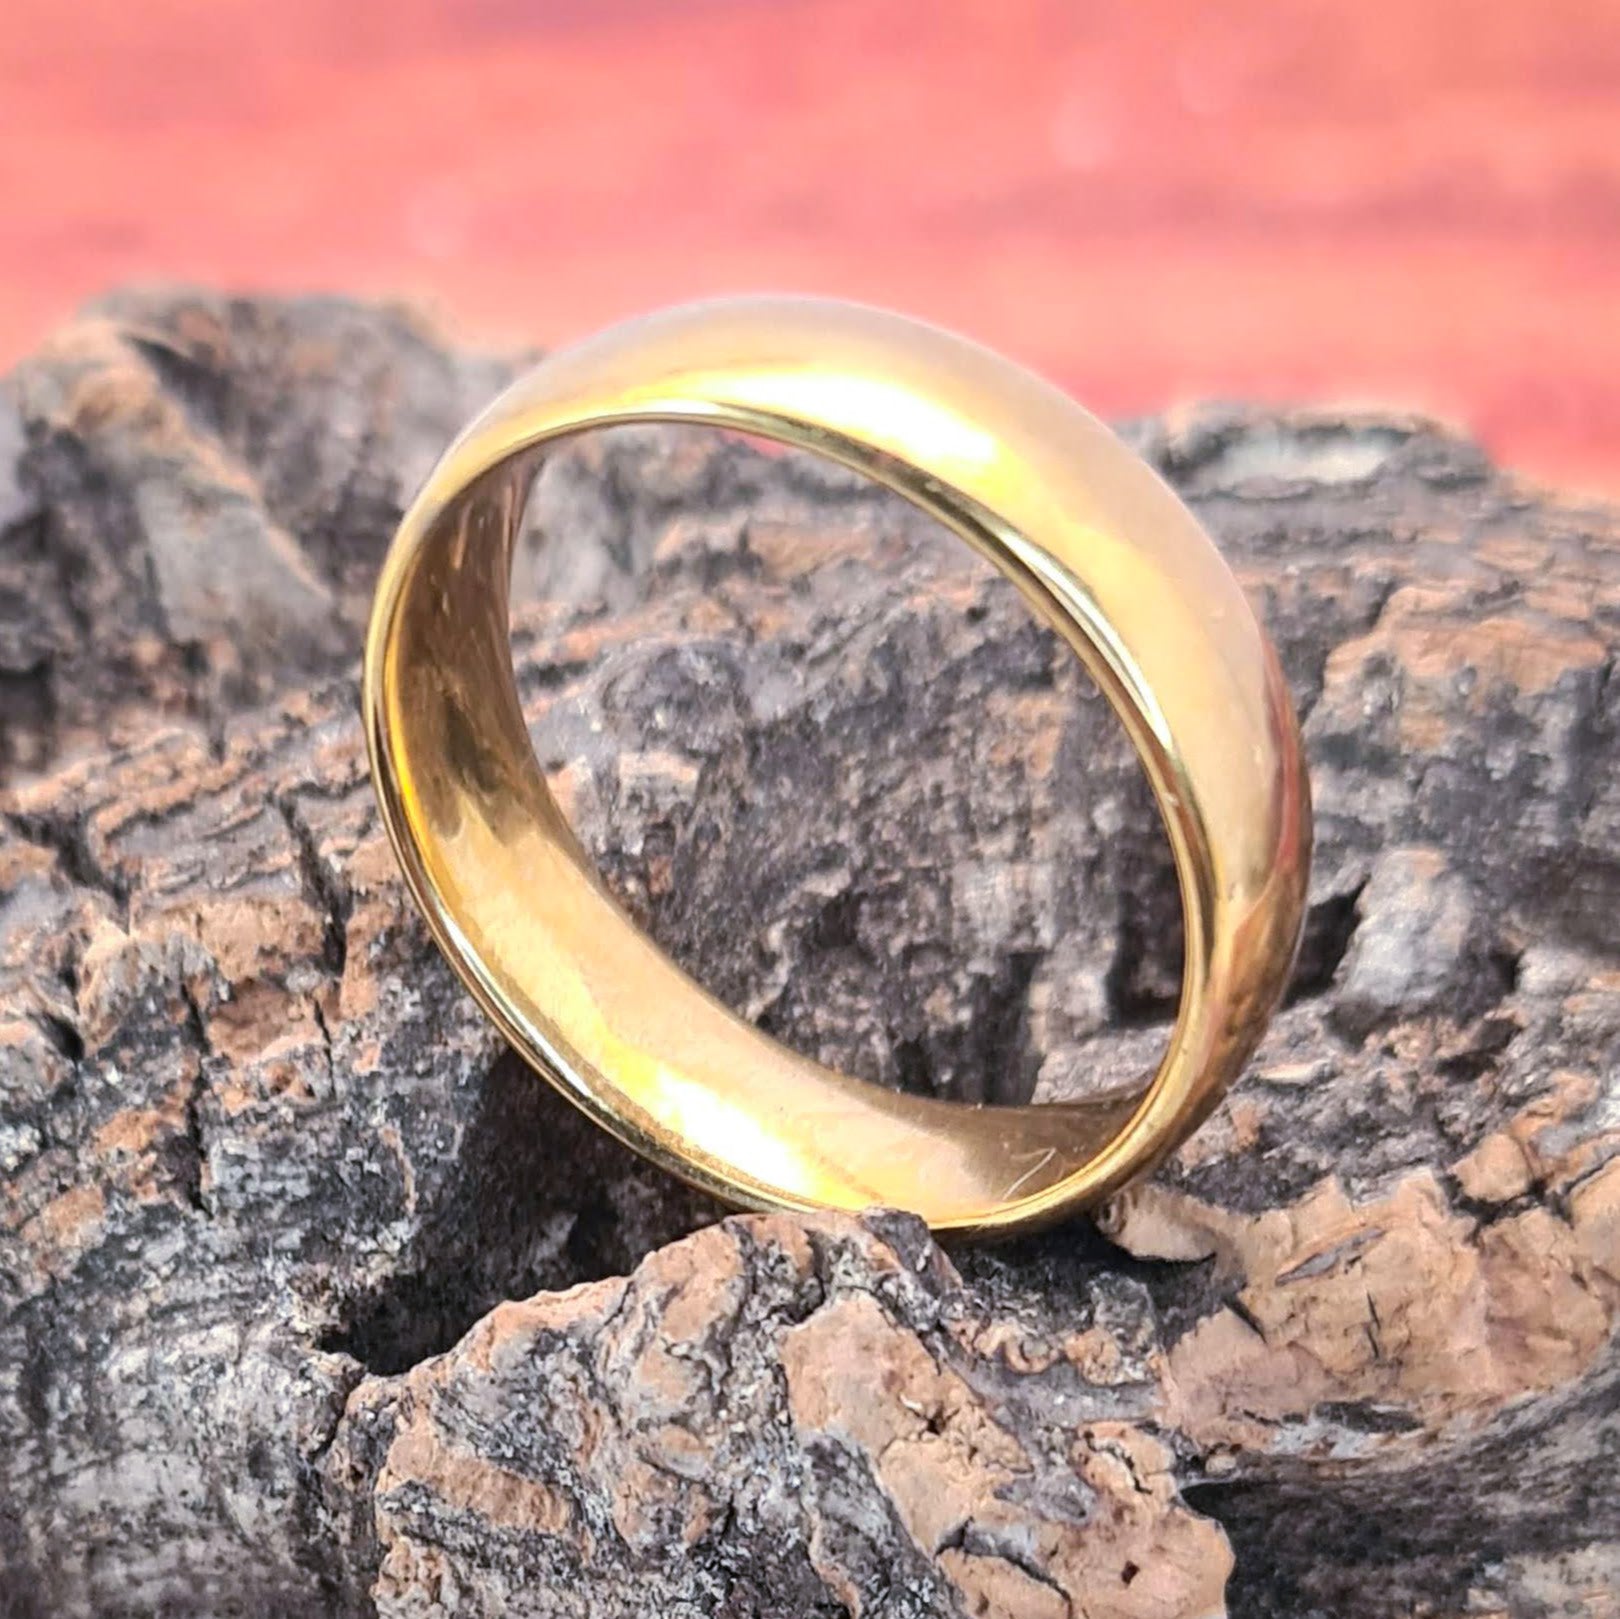 Anillo tipo alianza de matrimonio o pareja en acero inoxidable en color dorado y ancho de 6mm. El anillo está sobre un tronco. Se incluye grabado de nombres y fecha importante gratis.